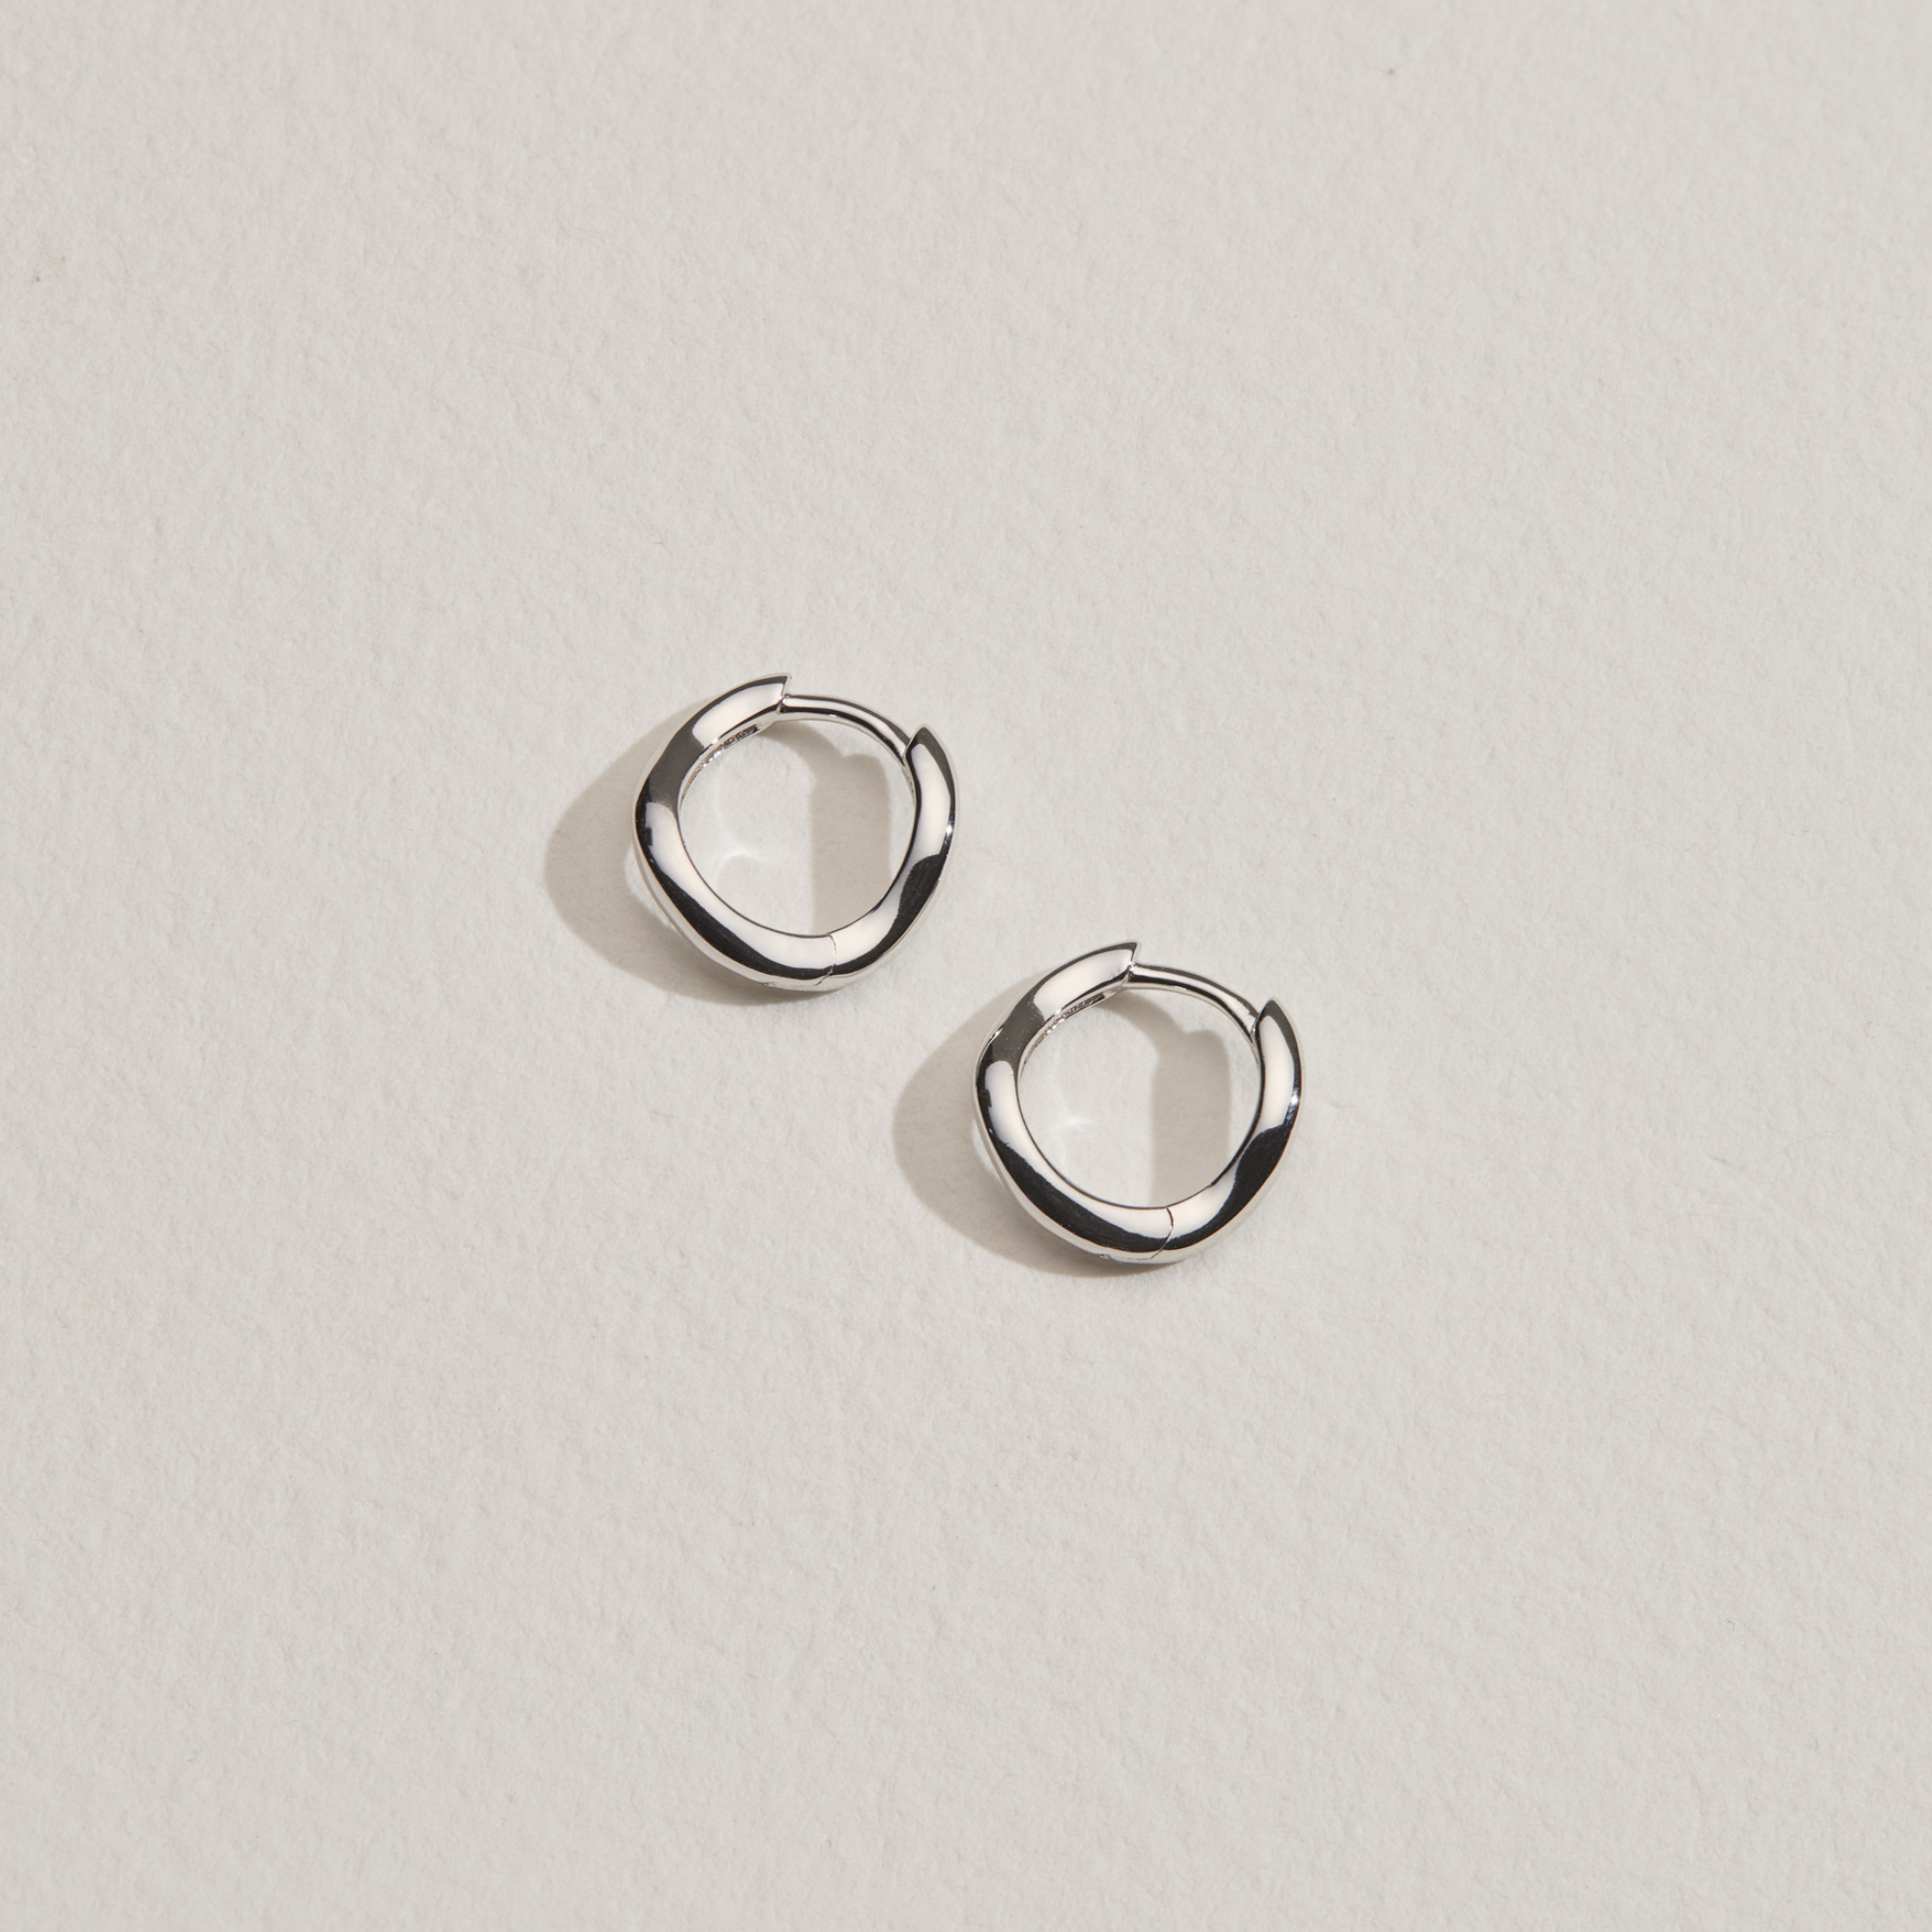 Silver wave huggie hoop earrings on a paper surface